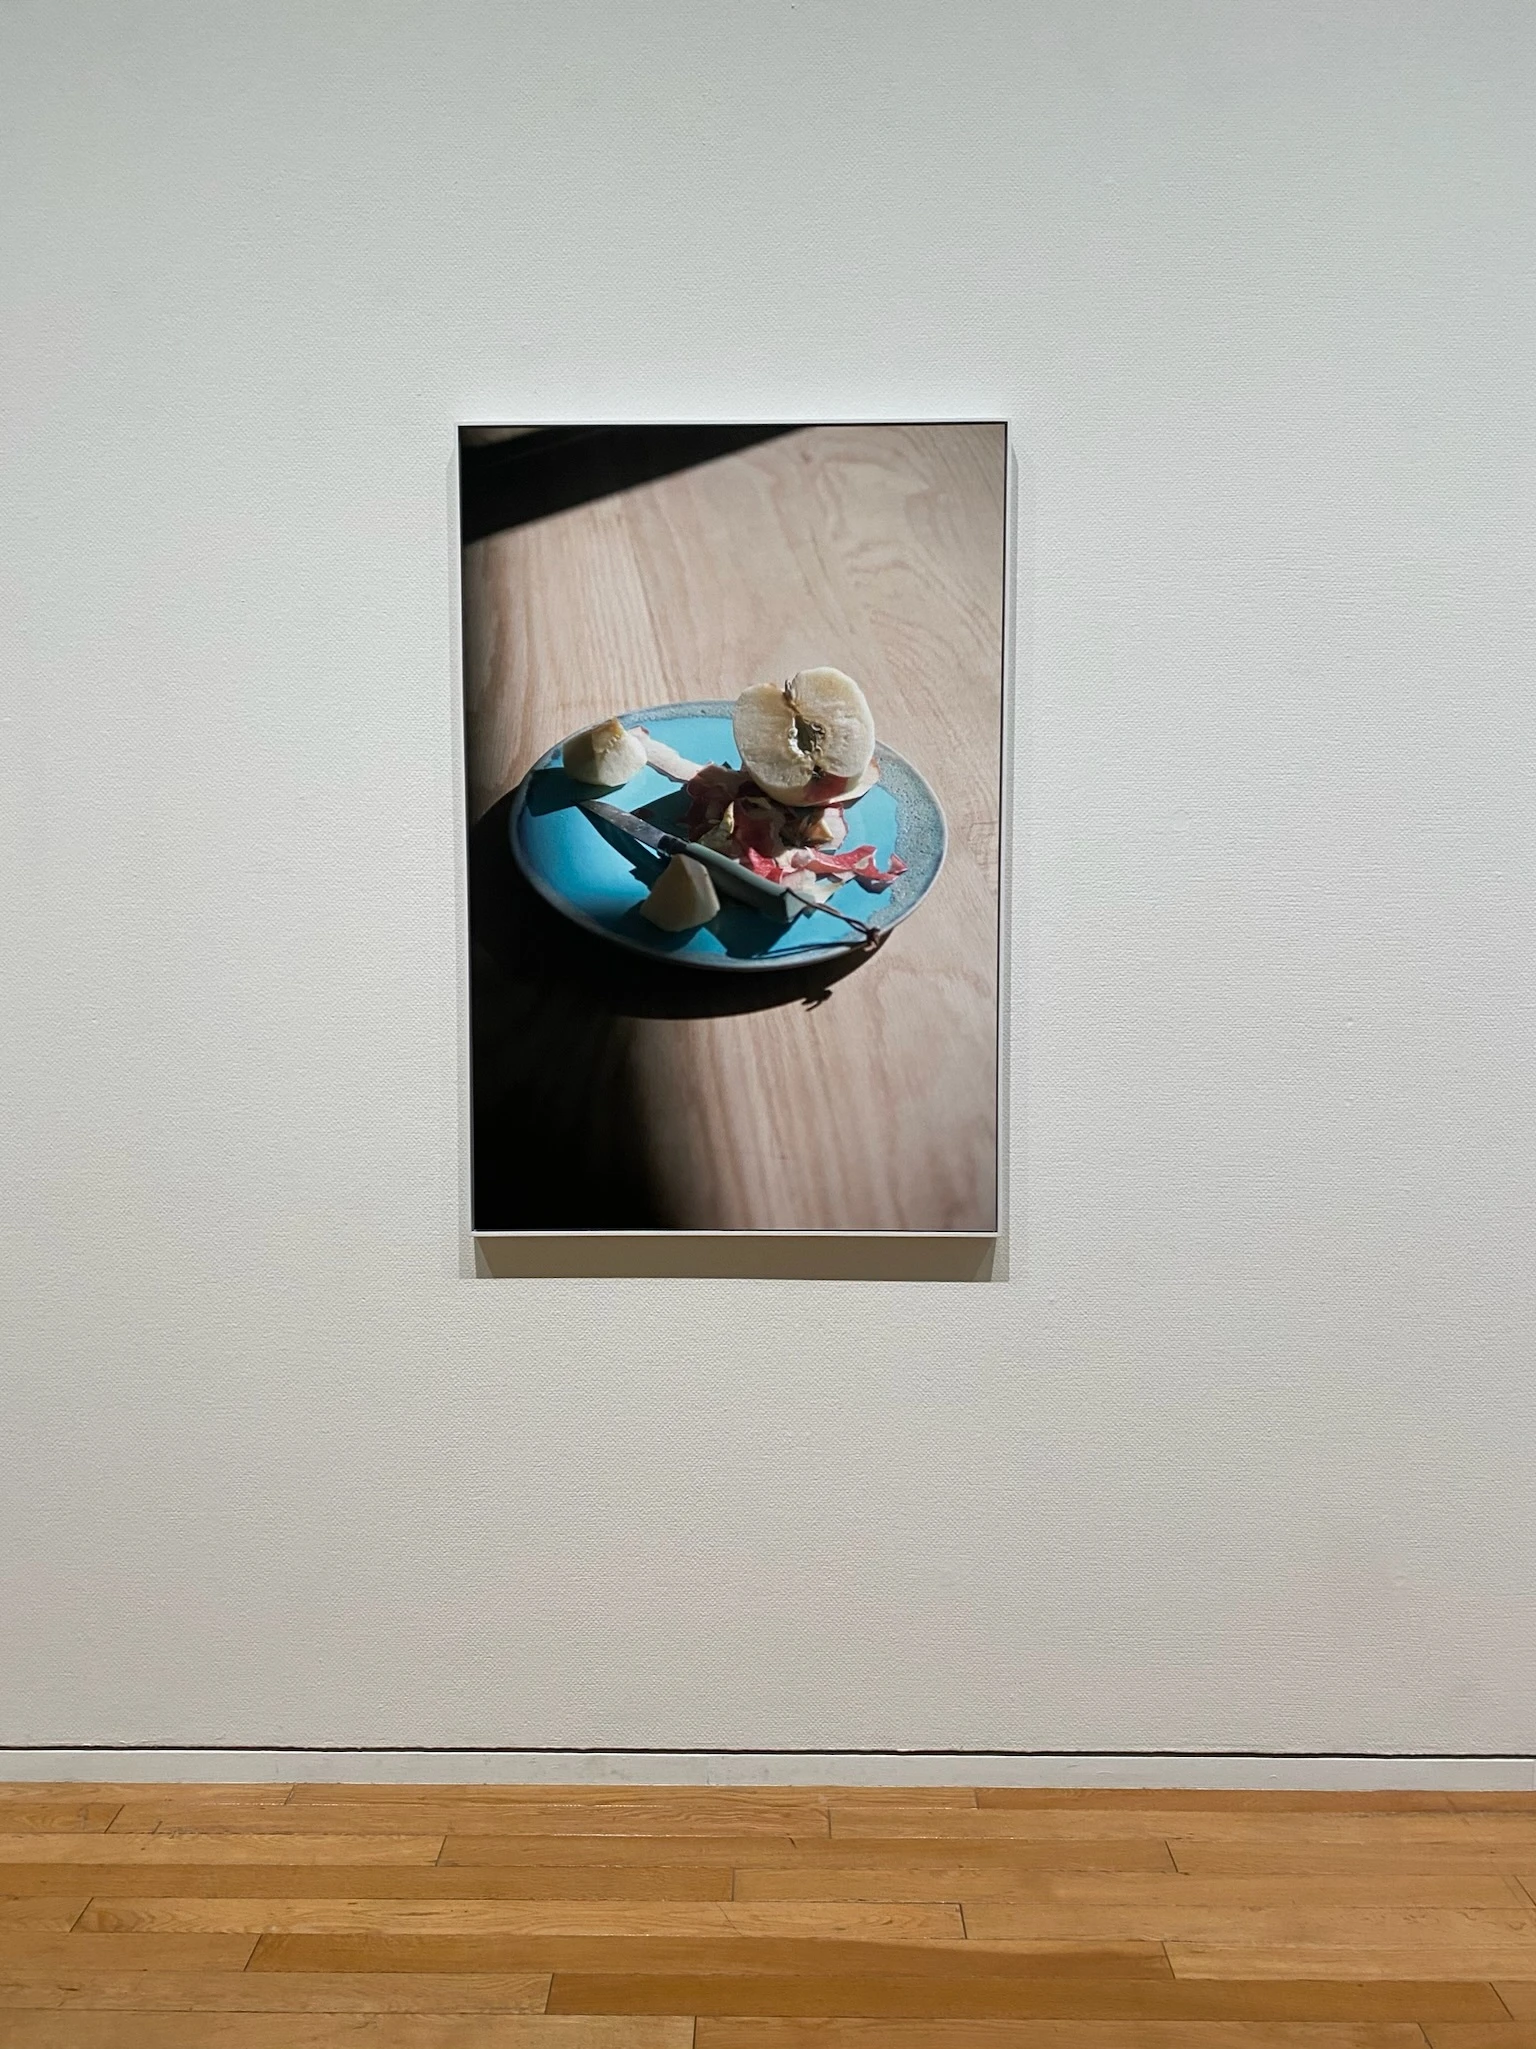 写真家・川内倫子さんの写真展「M/E 球体の上  無限の連なり」の様子。薄茶色のテーブルの上に水色のお皿があり、その上に剥き掛けのリンゴが置いてある一枚の写真を撮った写真です。淡い光が差しています。